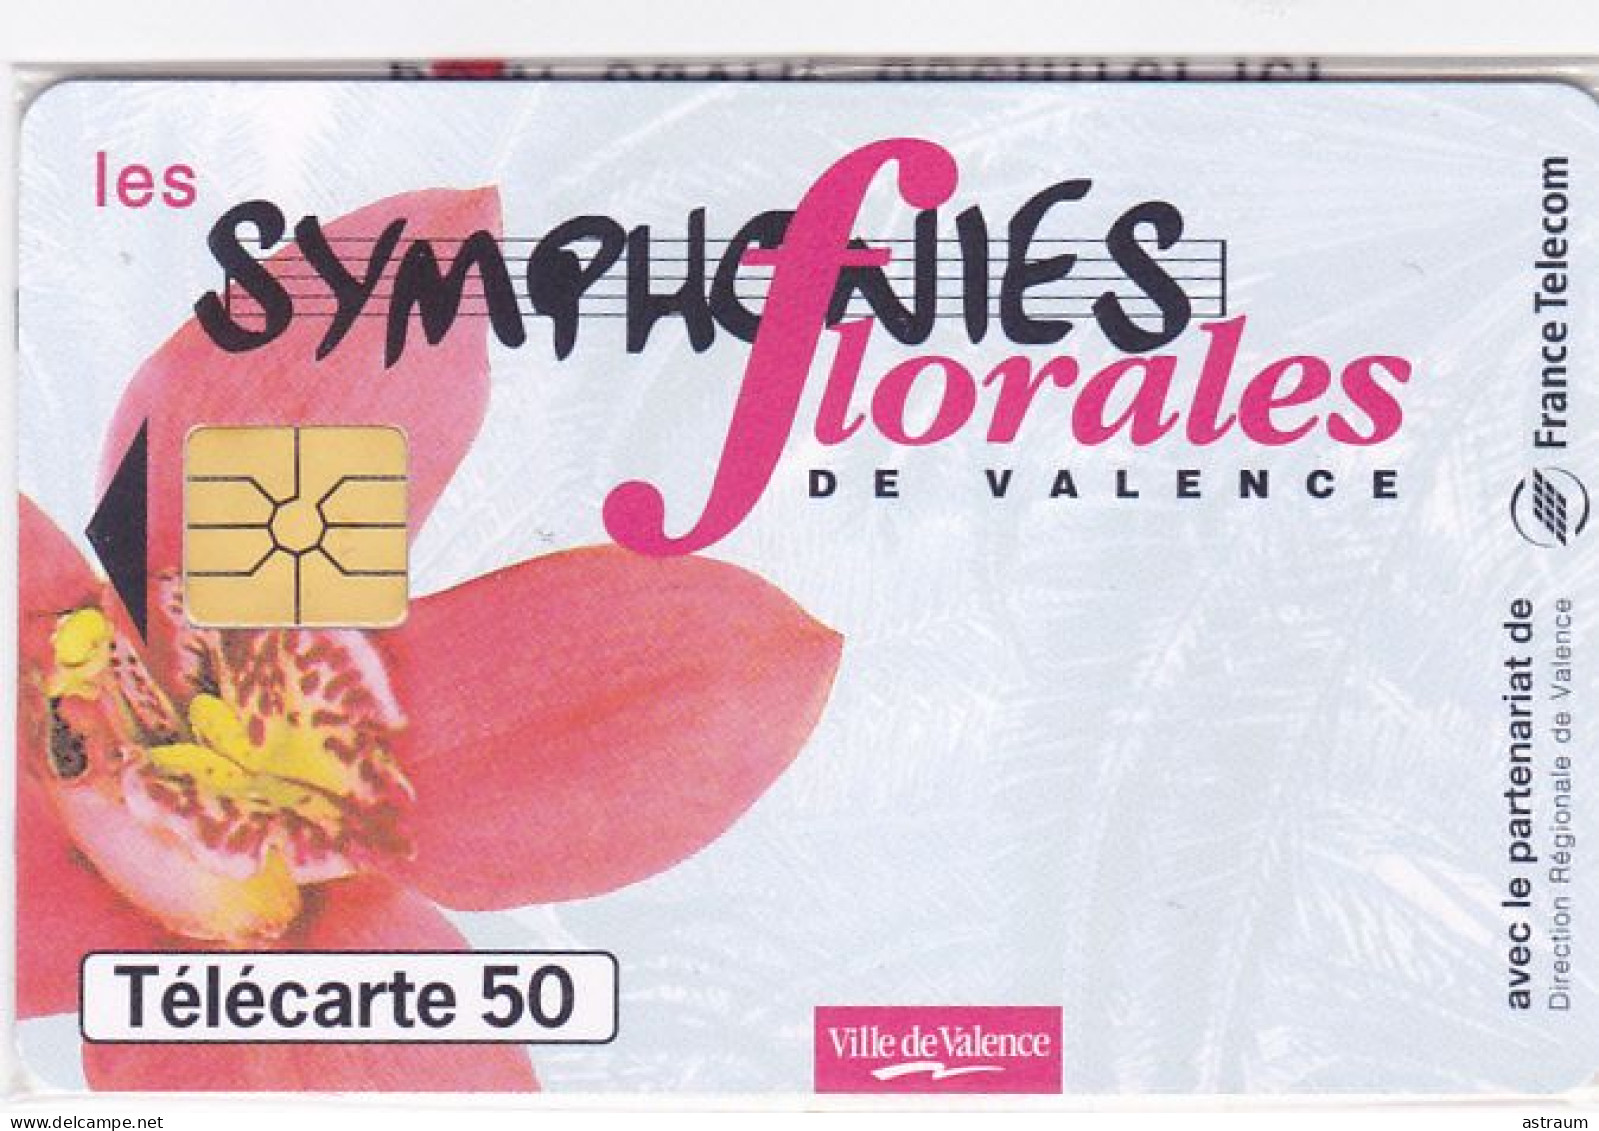 Telecarte Privée / Publique En1634 NSB - Symphonies Florales De Valence - 50 U - Gem - 1997 - 50 Eenheden